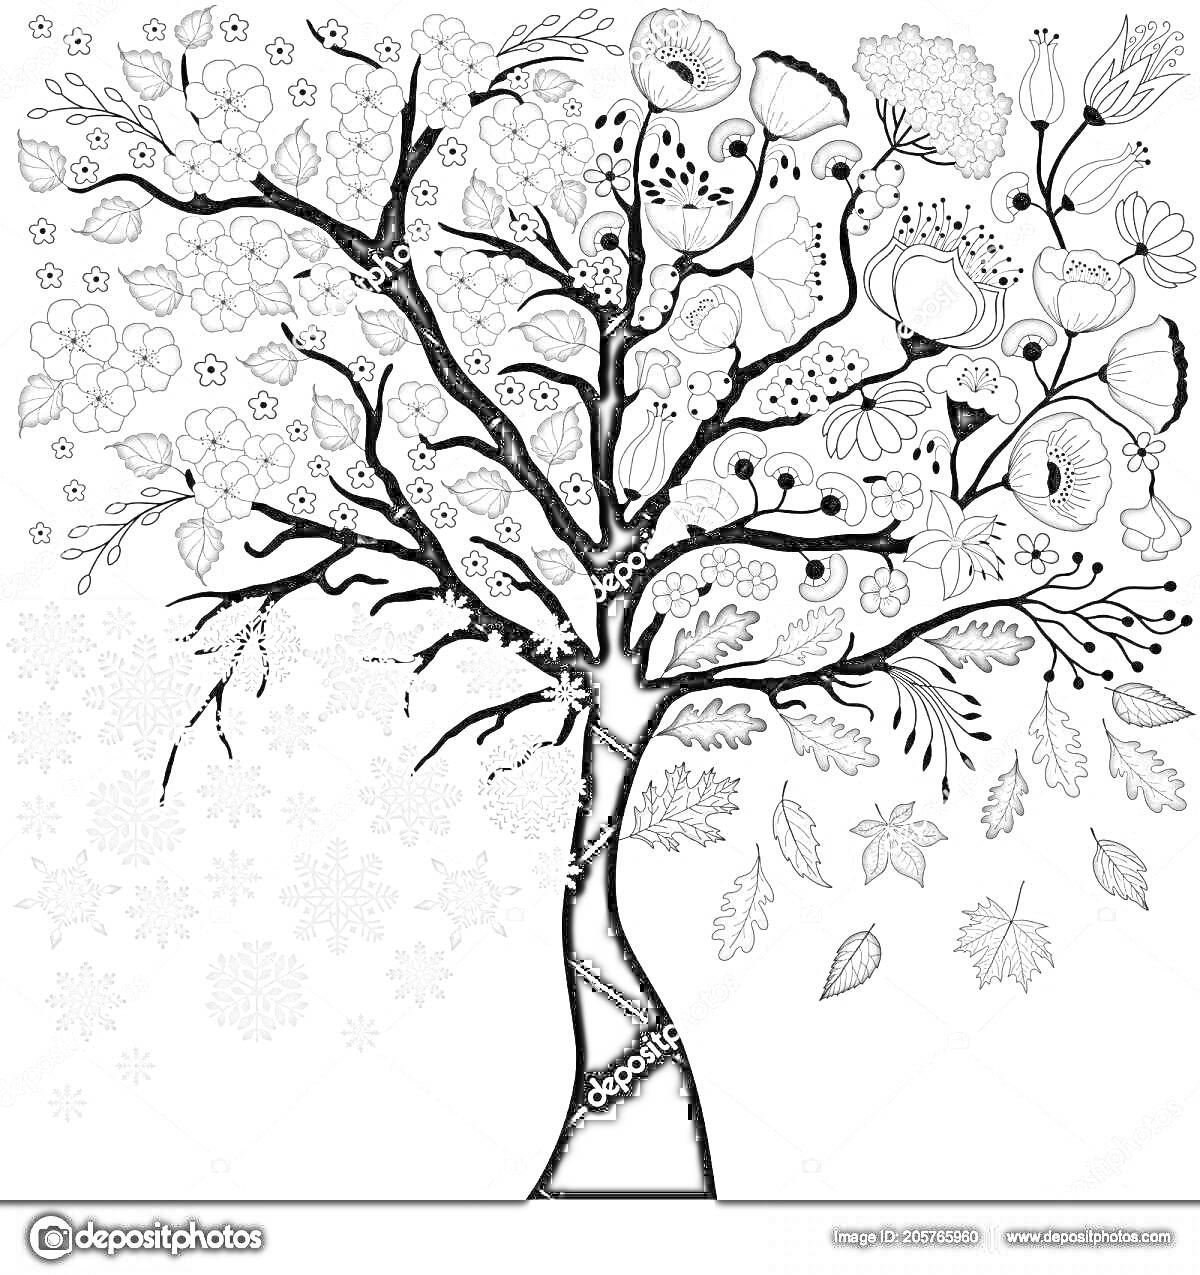 Раскраска Дерево с цветами, листьями и снежинками, изображающее времена года